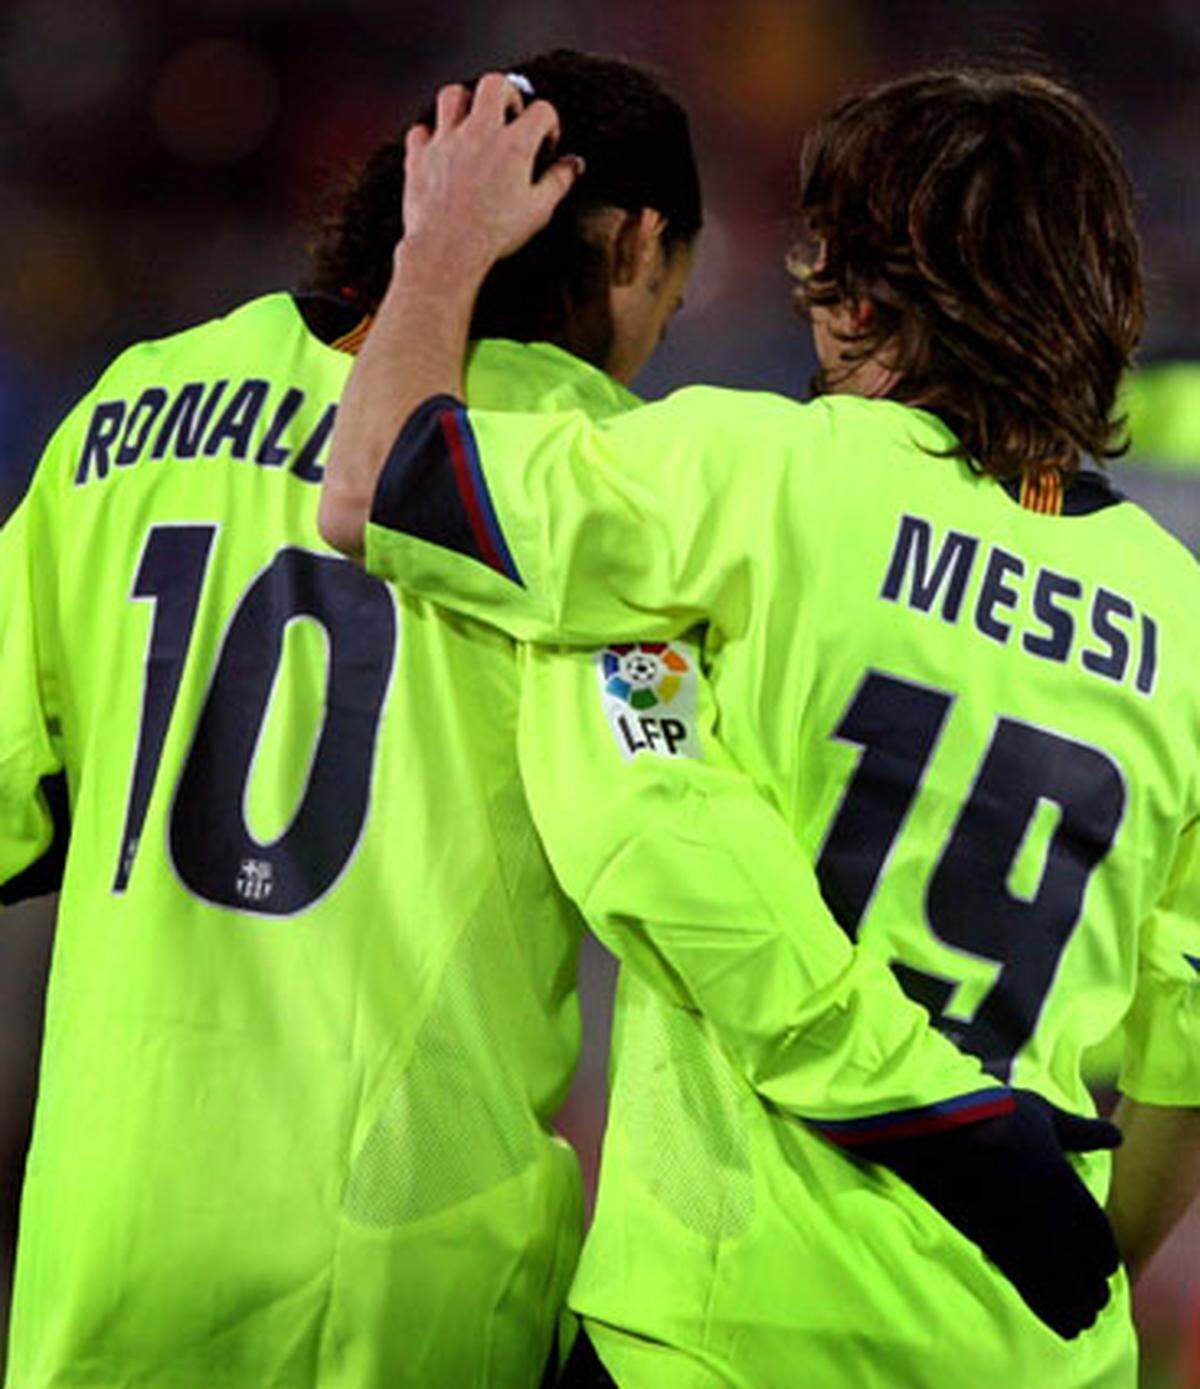 Und 2005/06 ging es weiter bergauf: In der Liga hatte der Stürmer aber hart zu kämpfen, um zu Einsatzzeiten zu kommen - am Ende durfte Messi zwar 17mal ran, aber nur einmal spielte er die ganzen 90 Minuten. Mit sechs Ligatoren schaffte er eine beachtliche Quote.